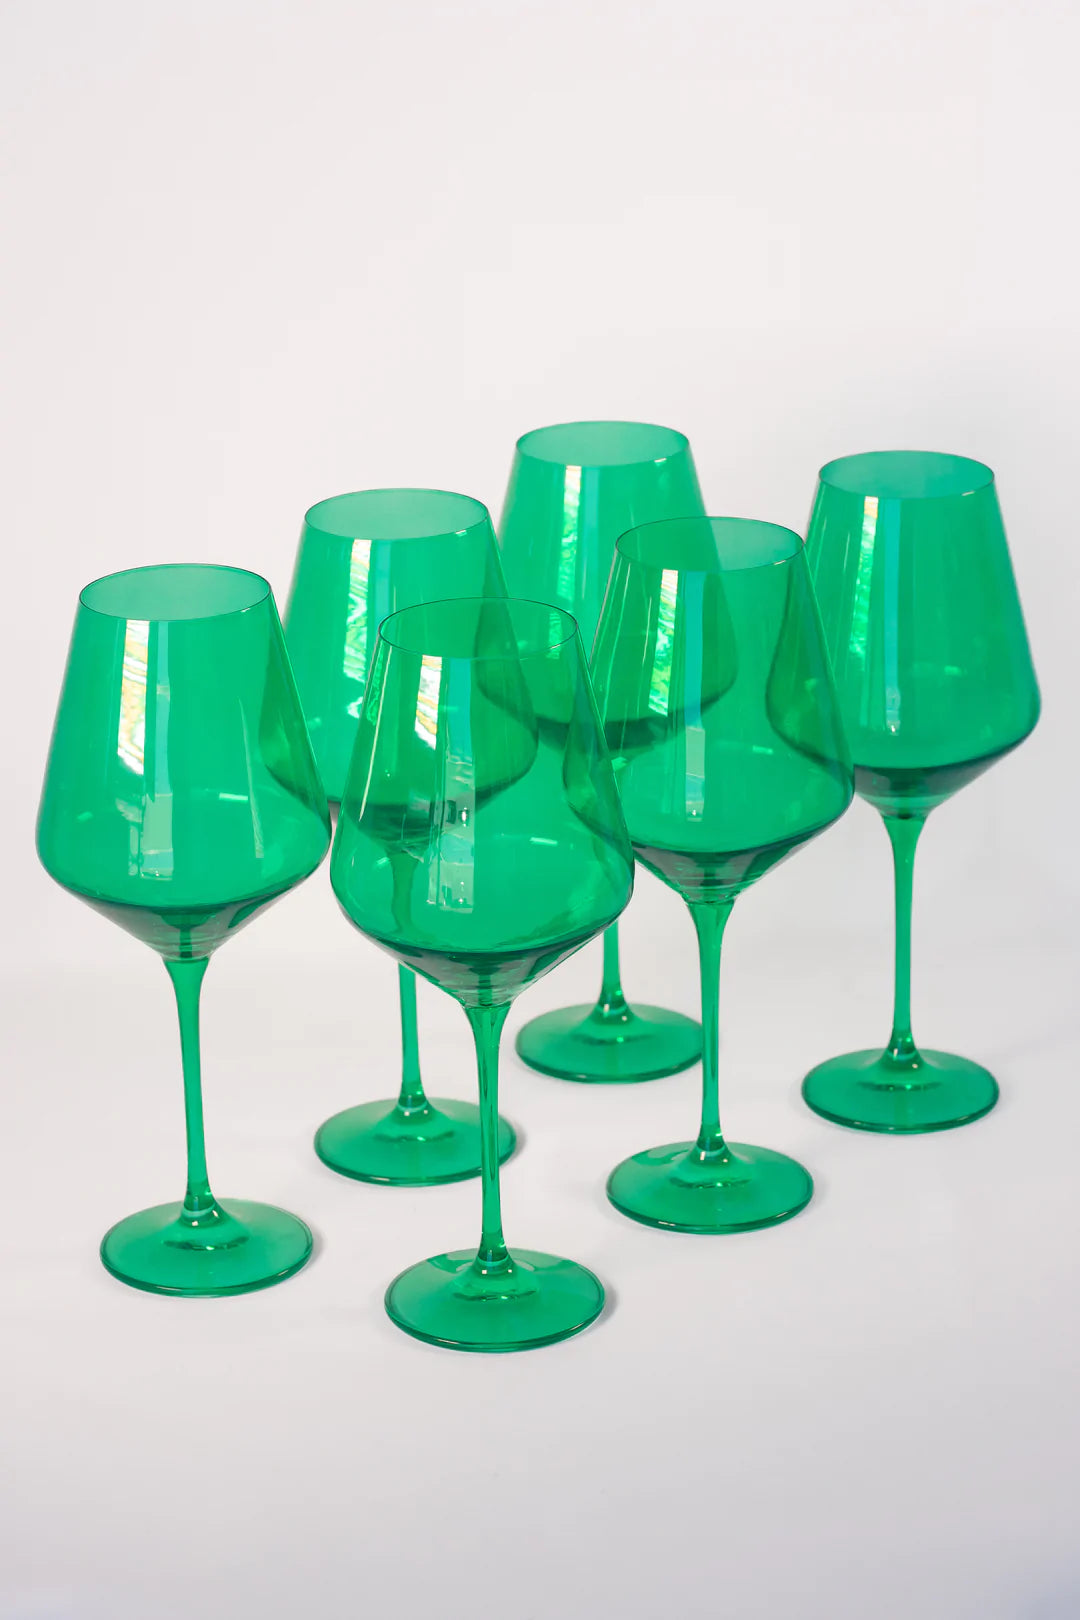 Estelle Colored Wine Stemmed Glasses - Set of 2 {Teal}